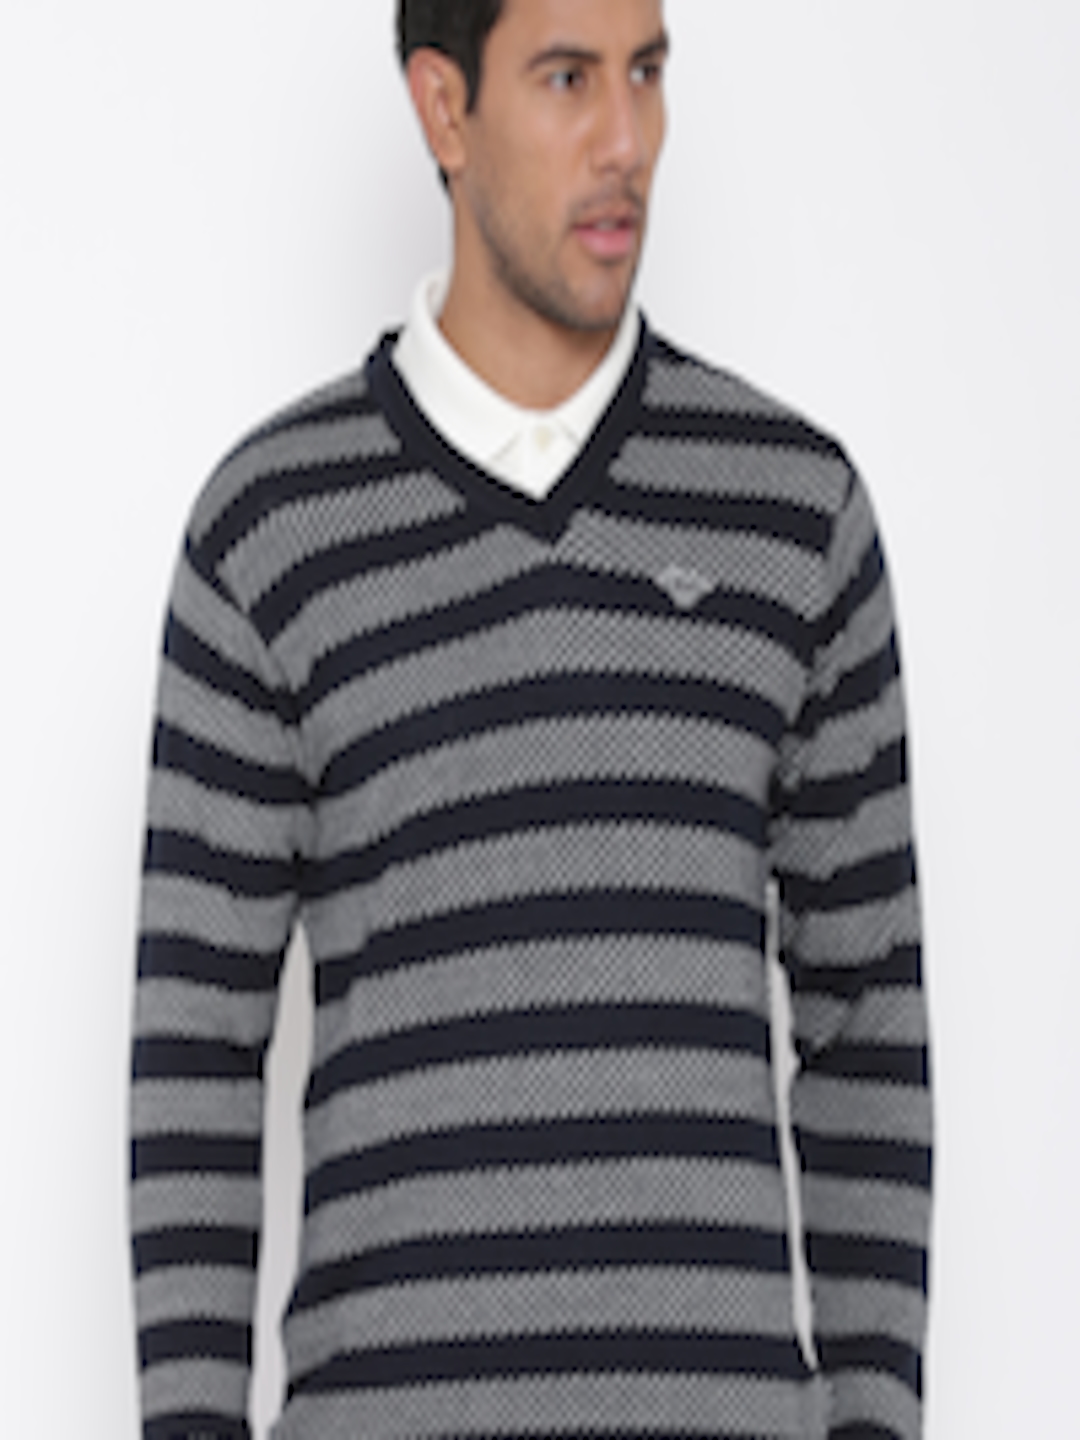 Buy Duke Stardust Men Navy & White Striped Sweater - Sweaters for Men ...